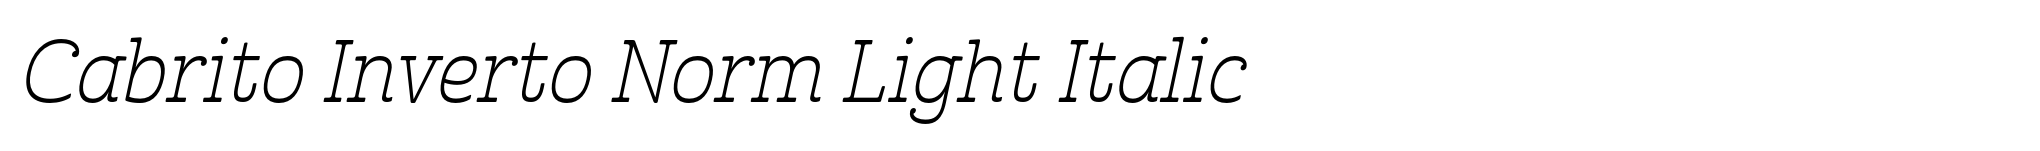 Cabrito Inverto Norm Light Italic image